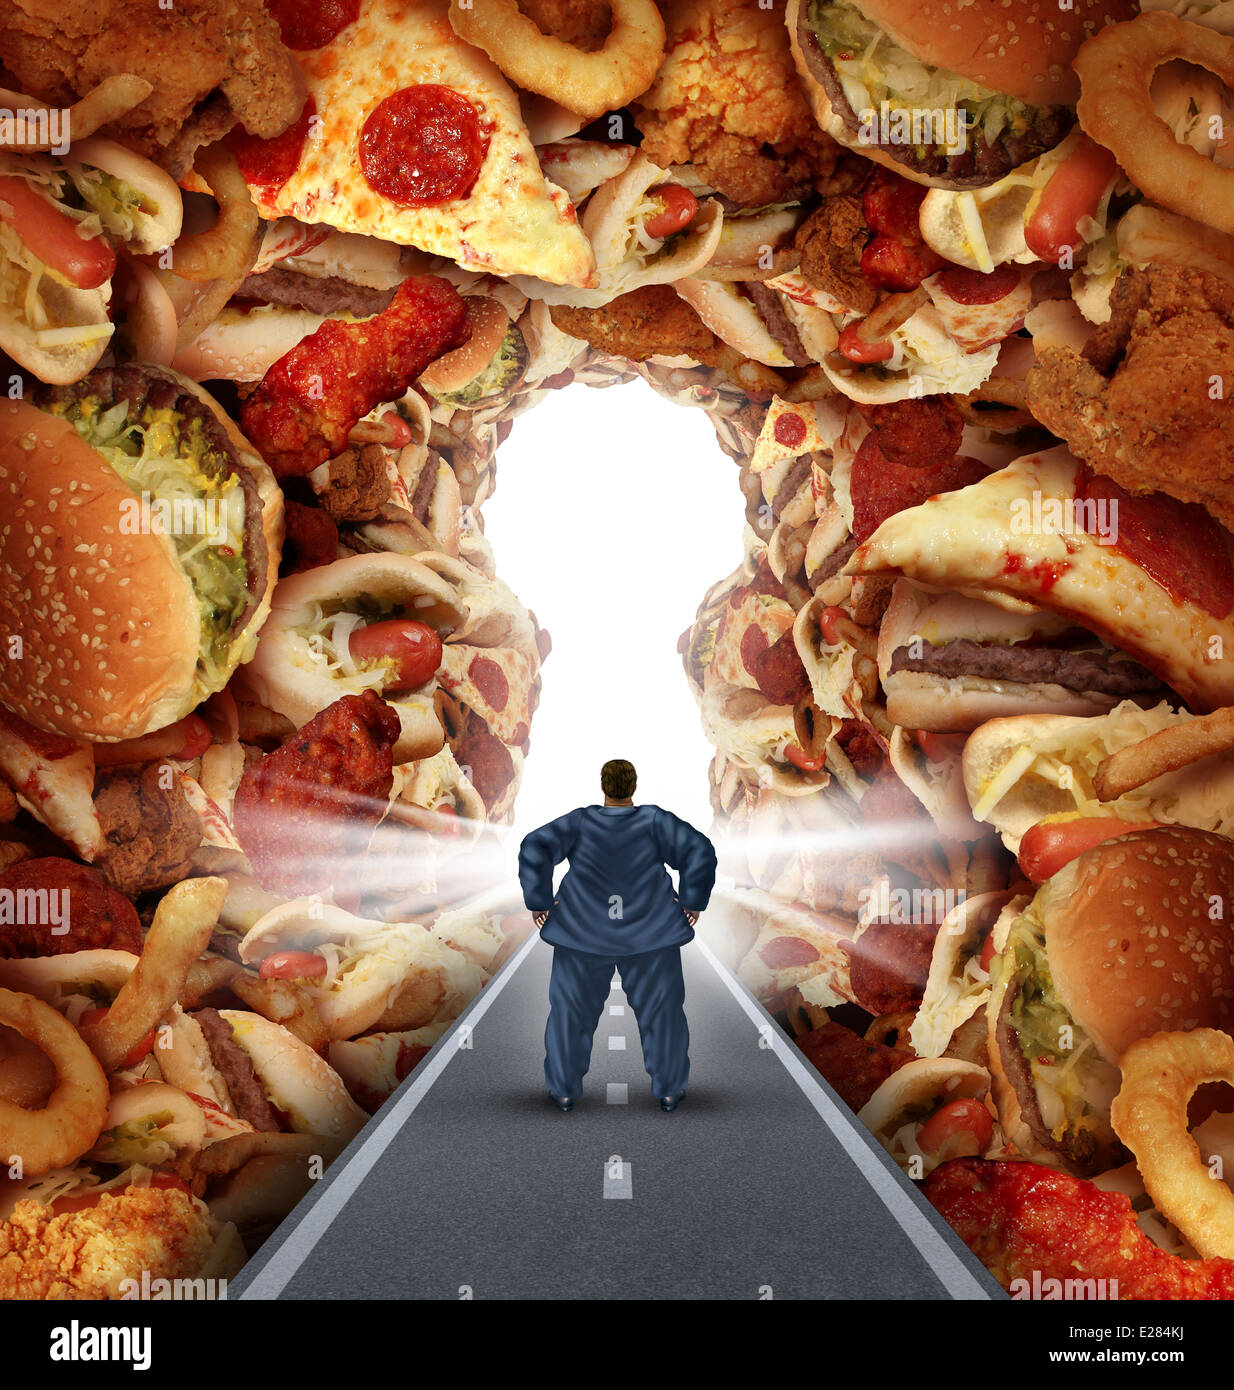 Diät-Lösungen und Übergewicht Diät-Beratung-Konzept als eine übergewichtige Mann zu Fuß auf einer Straße zu einem Haufen von fettigen Junk-Food, geformt wie ein Schlüsselloch als Metapher für Antworten auf ungesunde Lebensmittel Risiken und Herausforderungen von Essstörungen Adipositas führt. Stockfoto